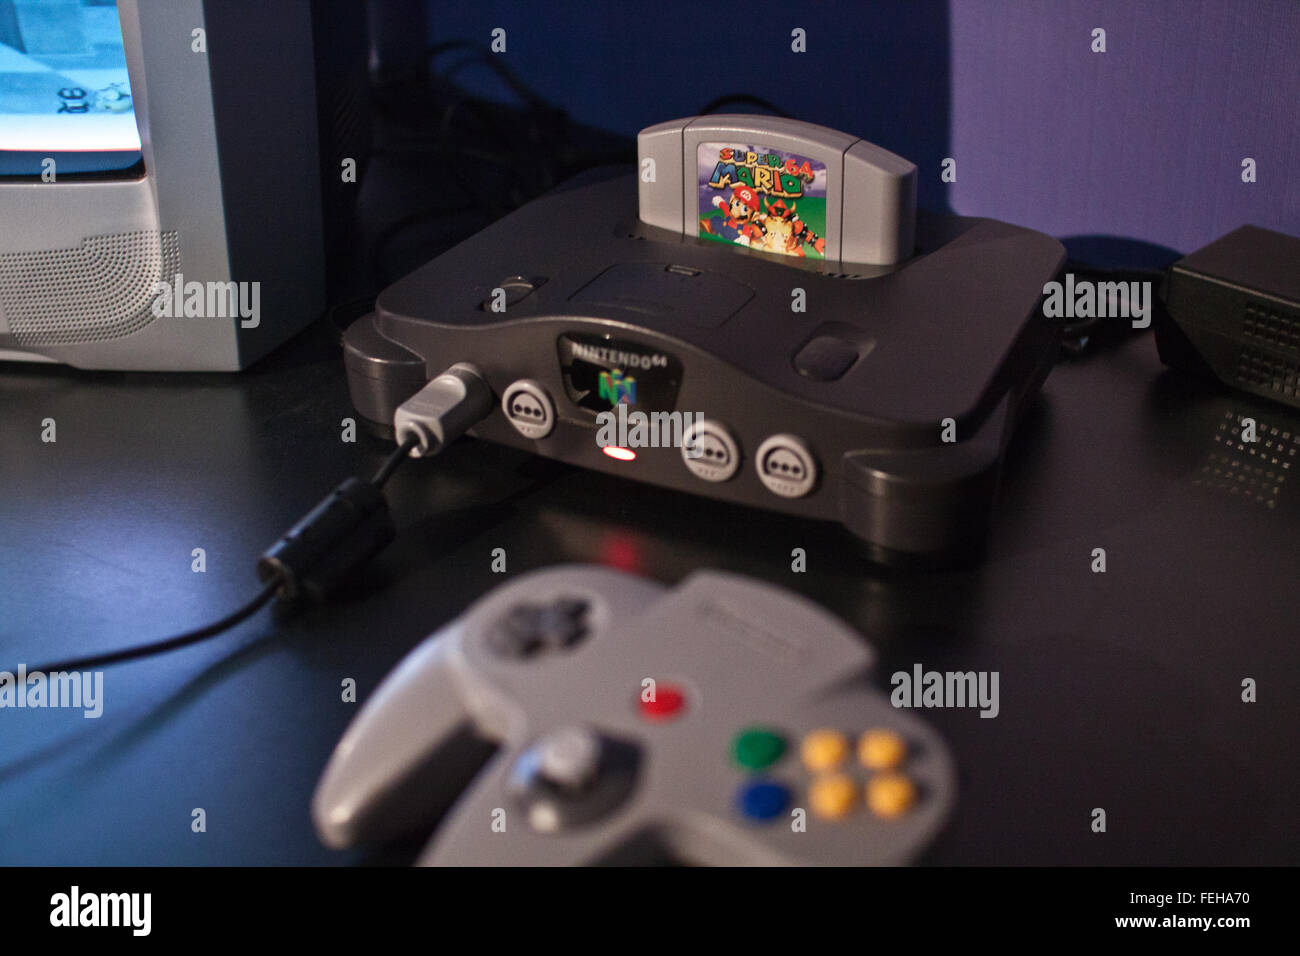 Nintendo N64 Konsole mit Super Mario-Computer-Spiel auf dem Display auf der  Eurogamer Expo eingefügt Stockfotografie - Alamy